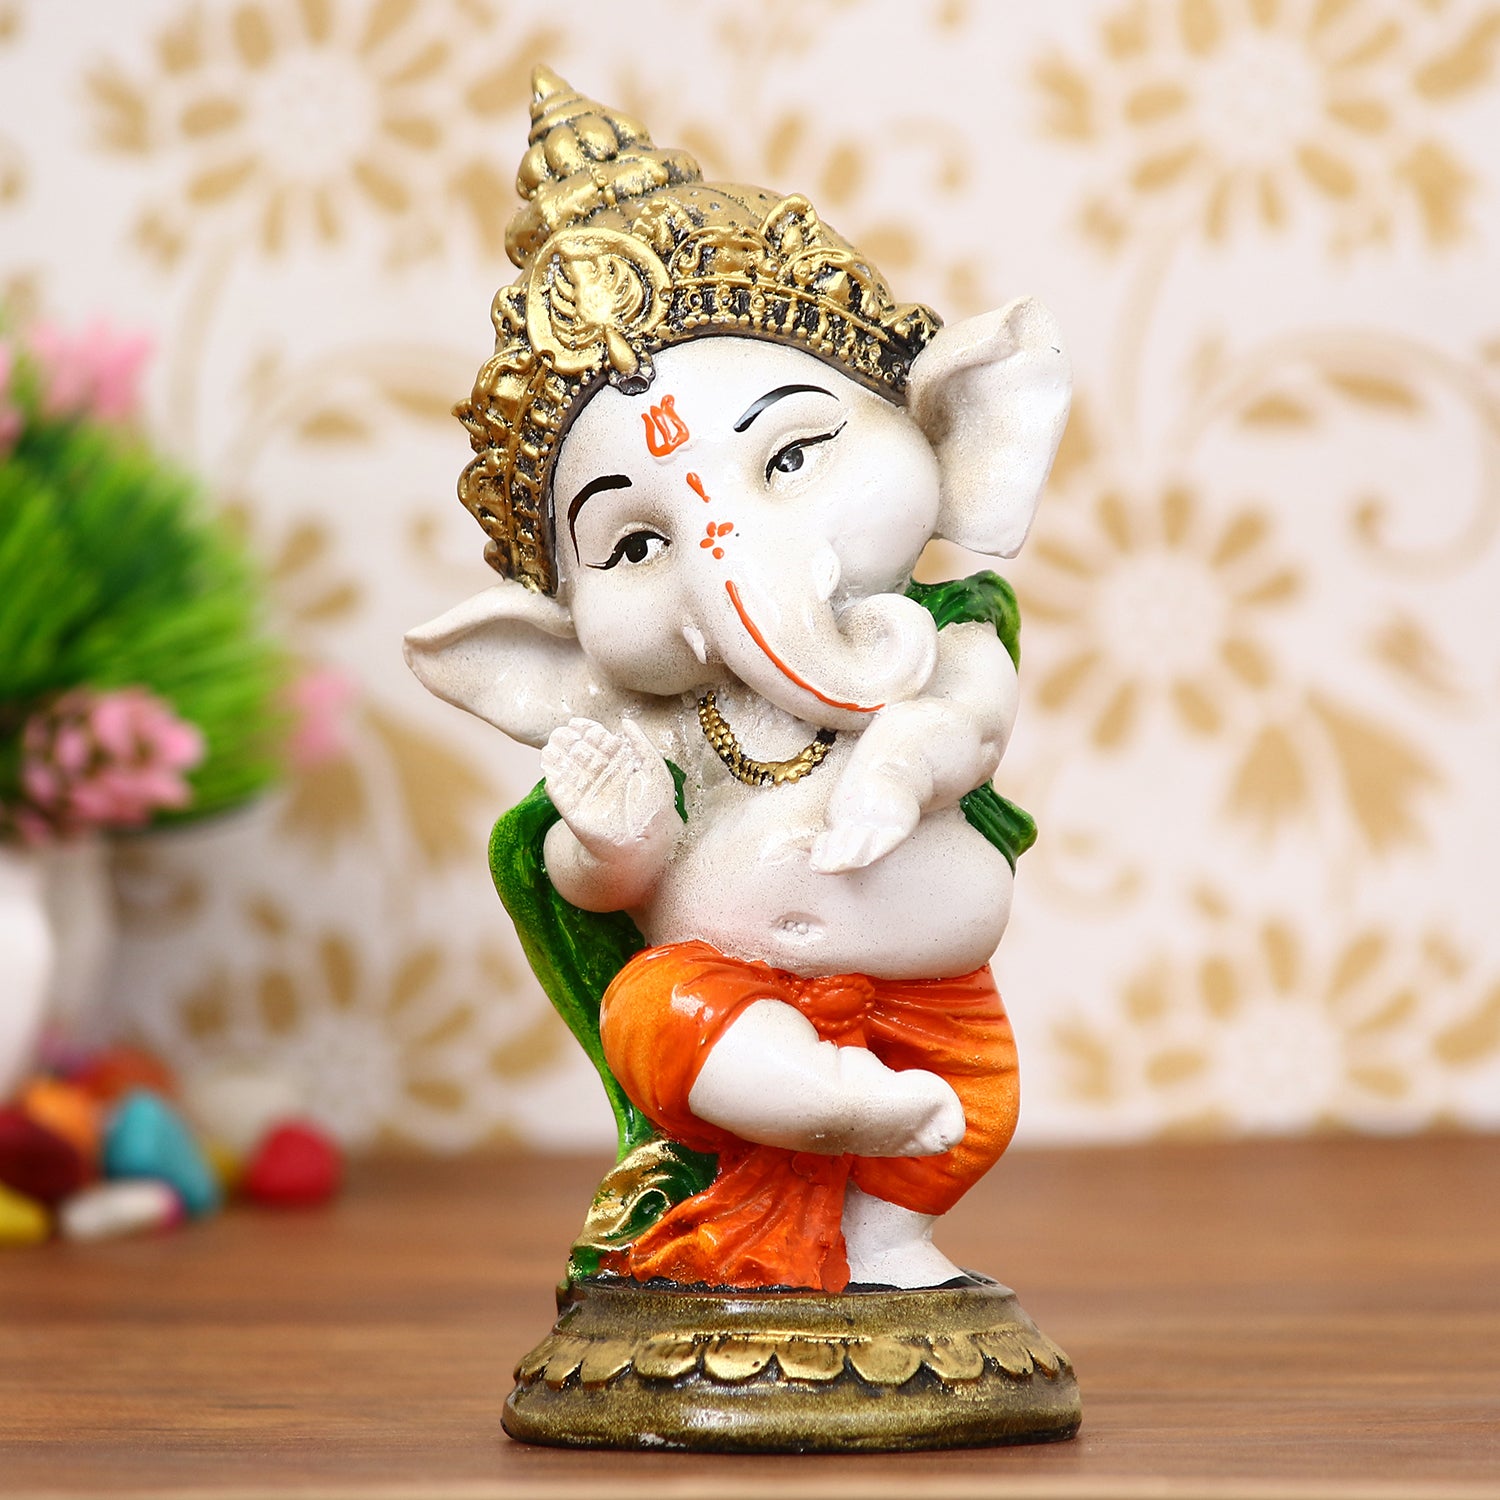 Lord Ganesha Idol In Dancing Avatar Decorative Showpiece